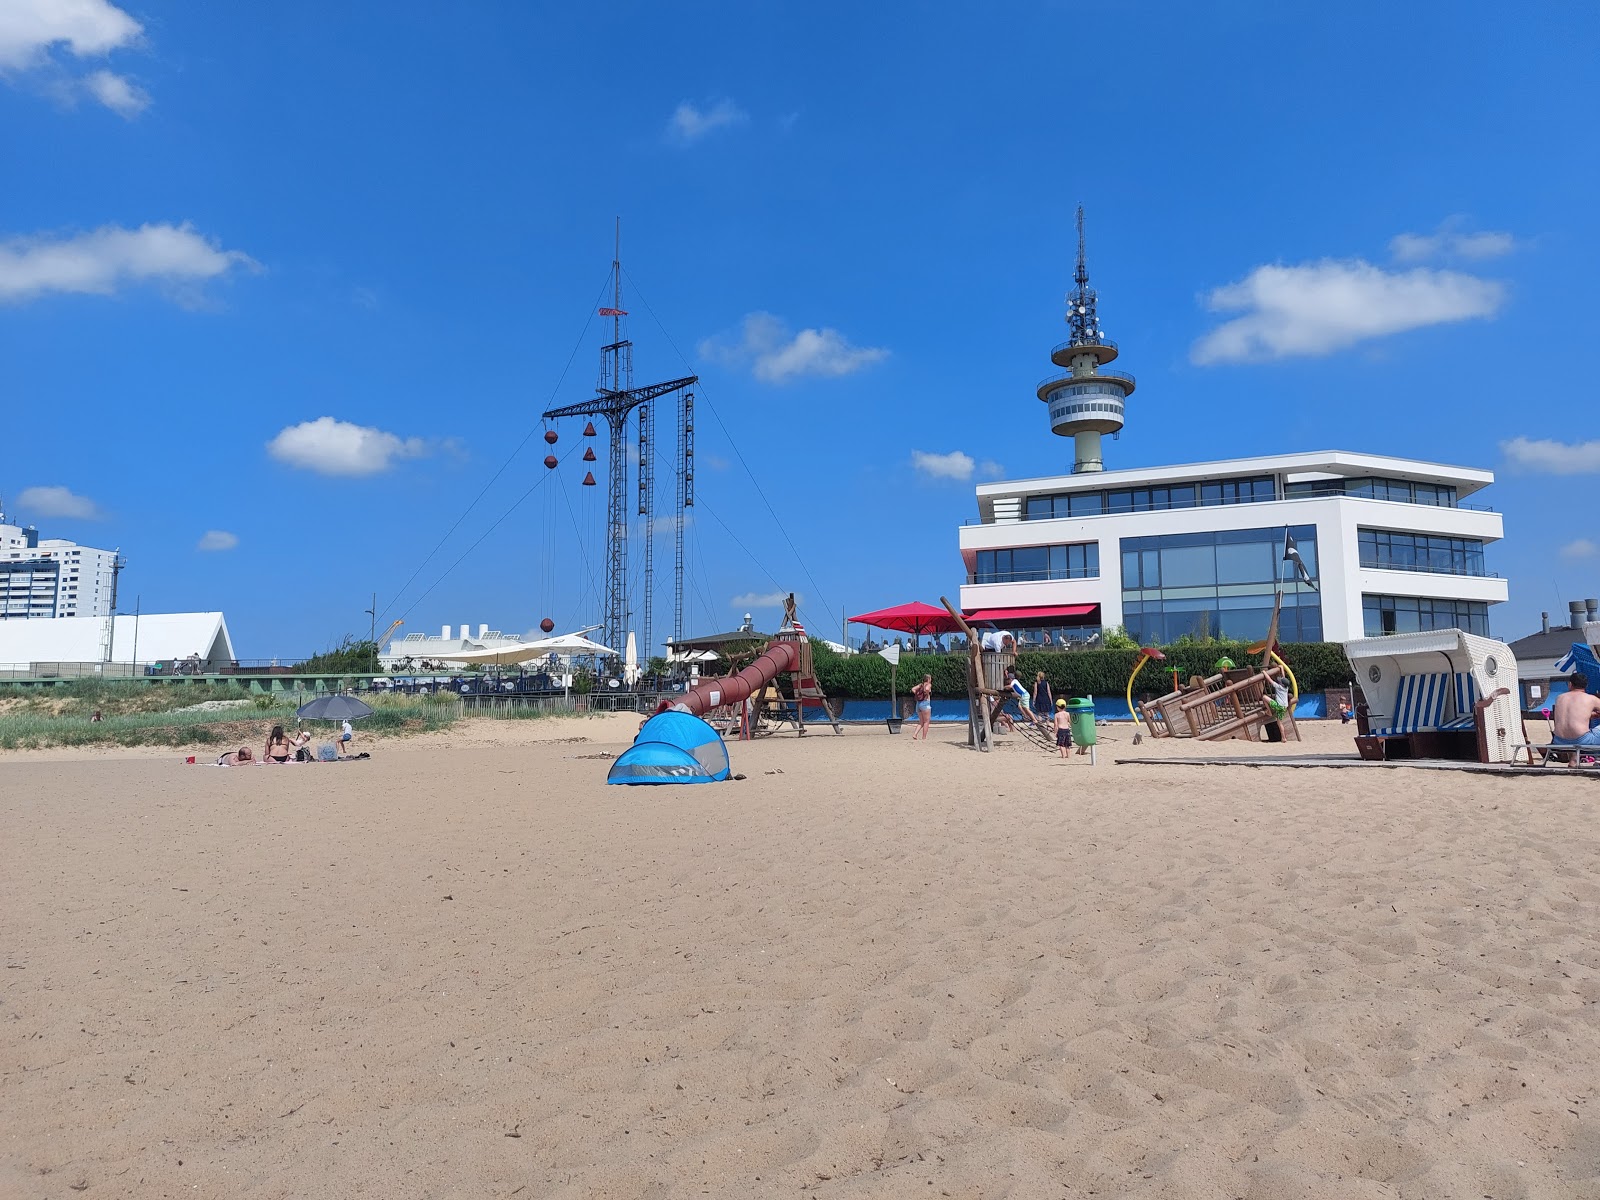 Foto af Bremerhaven Strand (Weser Strand) og bosættelsen